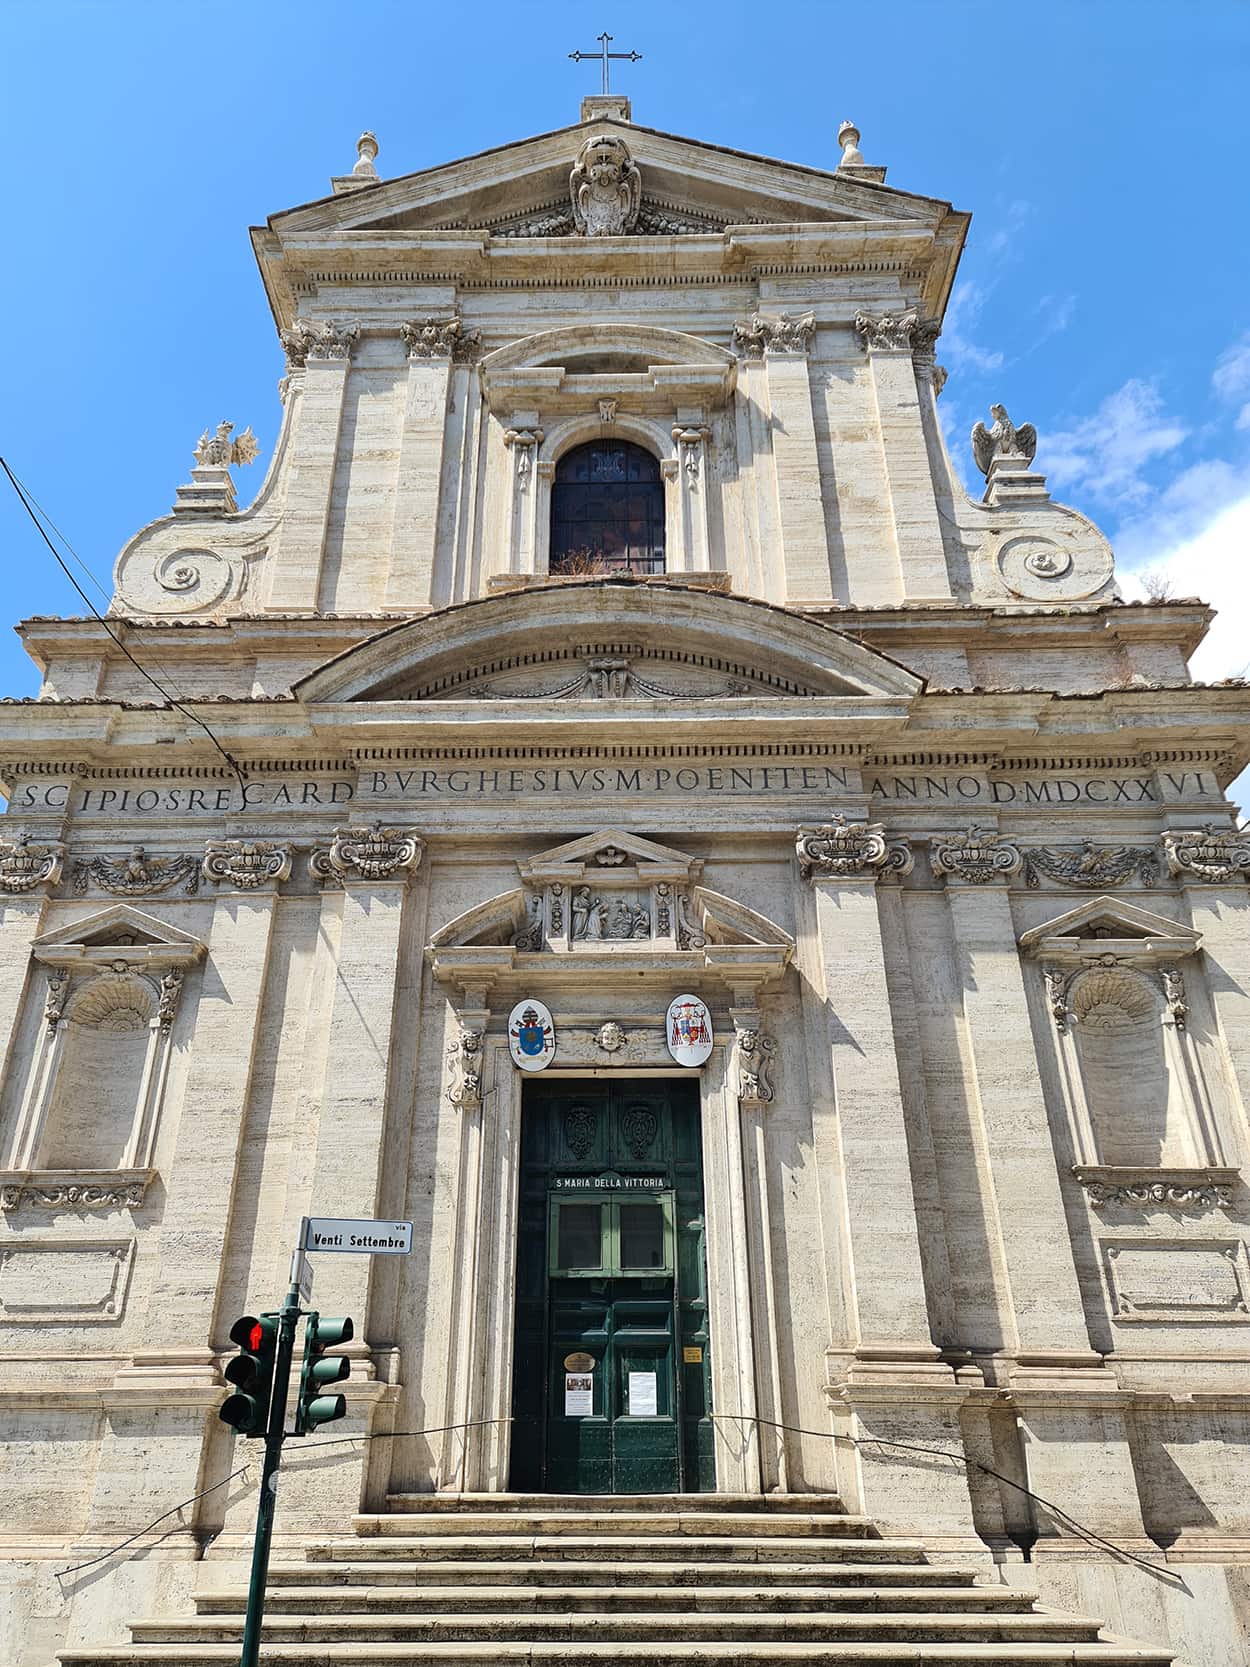 Il tour Angeli e Demoni prosegue nella chiesa di Santa Maria della Vittoria, la cui facciata è piuttosto sobria con poche decorazioni.